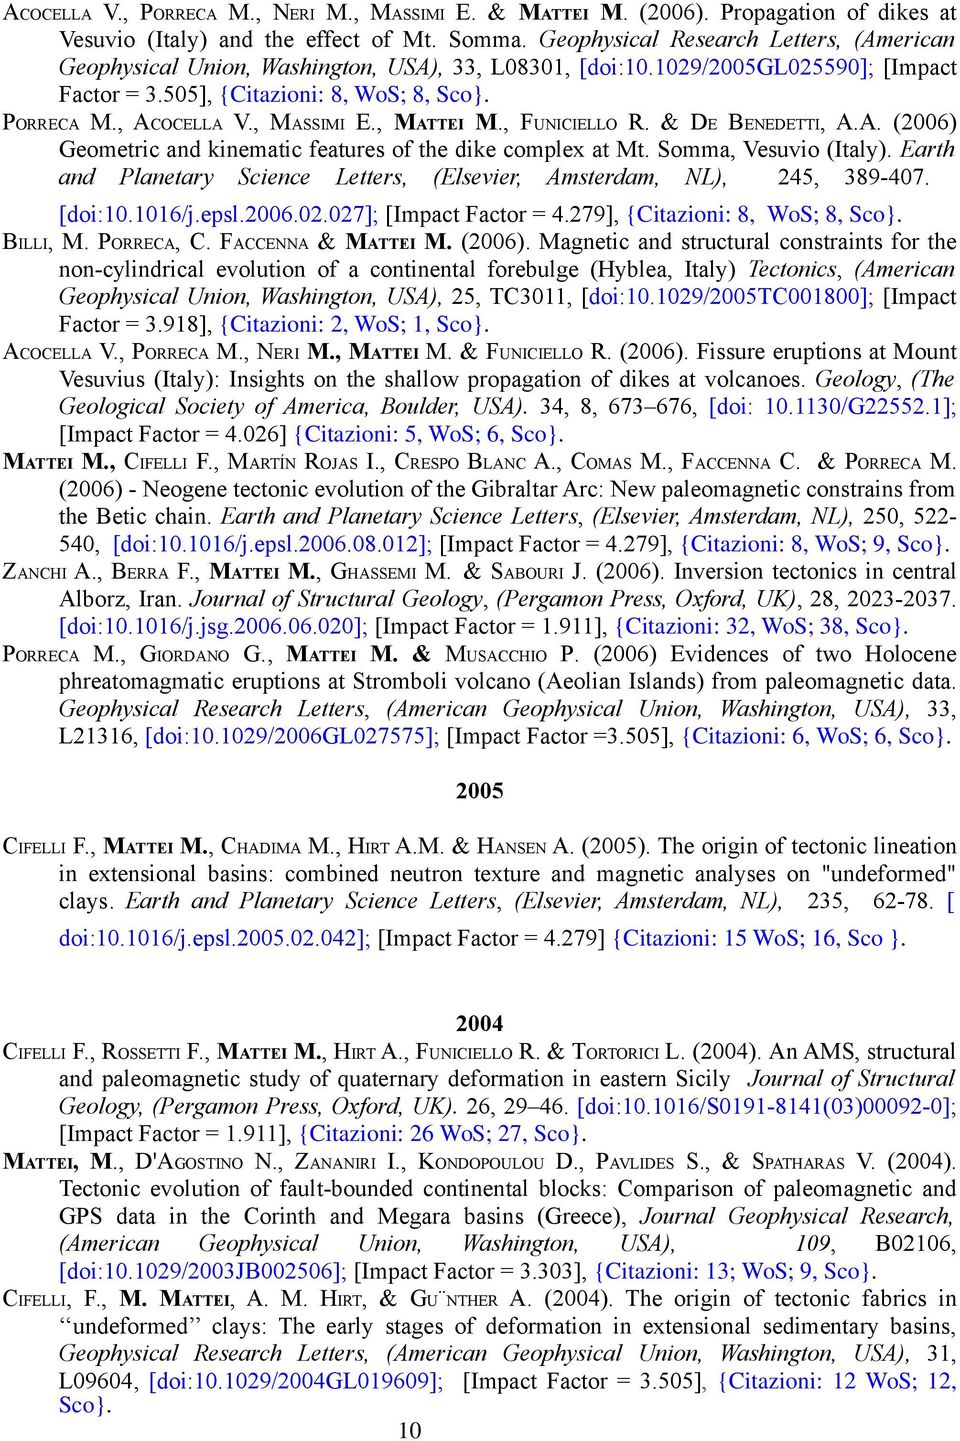 , MASSIMI E., MATTEI M., FUNICIELLO R. & DE BENEDETTI, A.A. (2006) Geometric and kinematic features of the dike complex at Mt. Somma, Vesuvio (Italy).